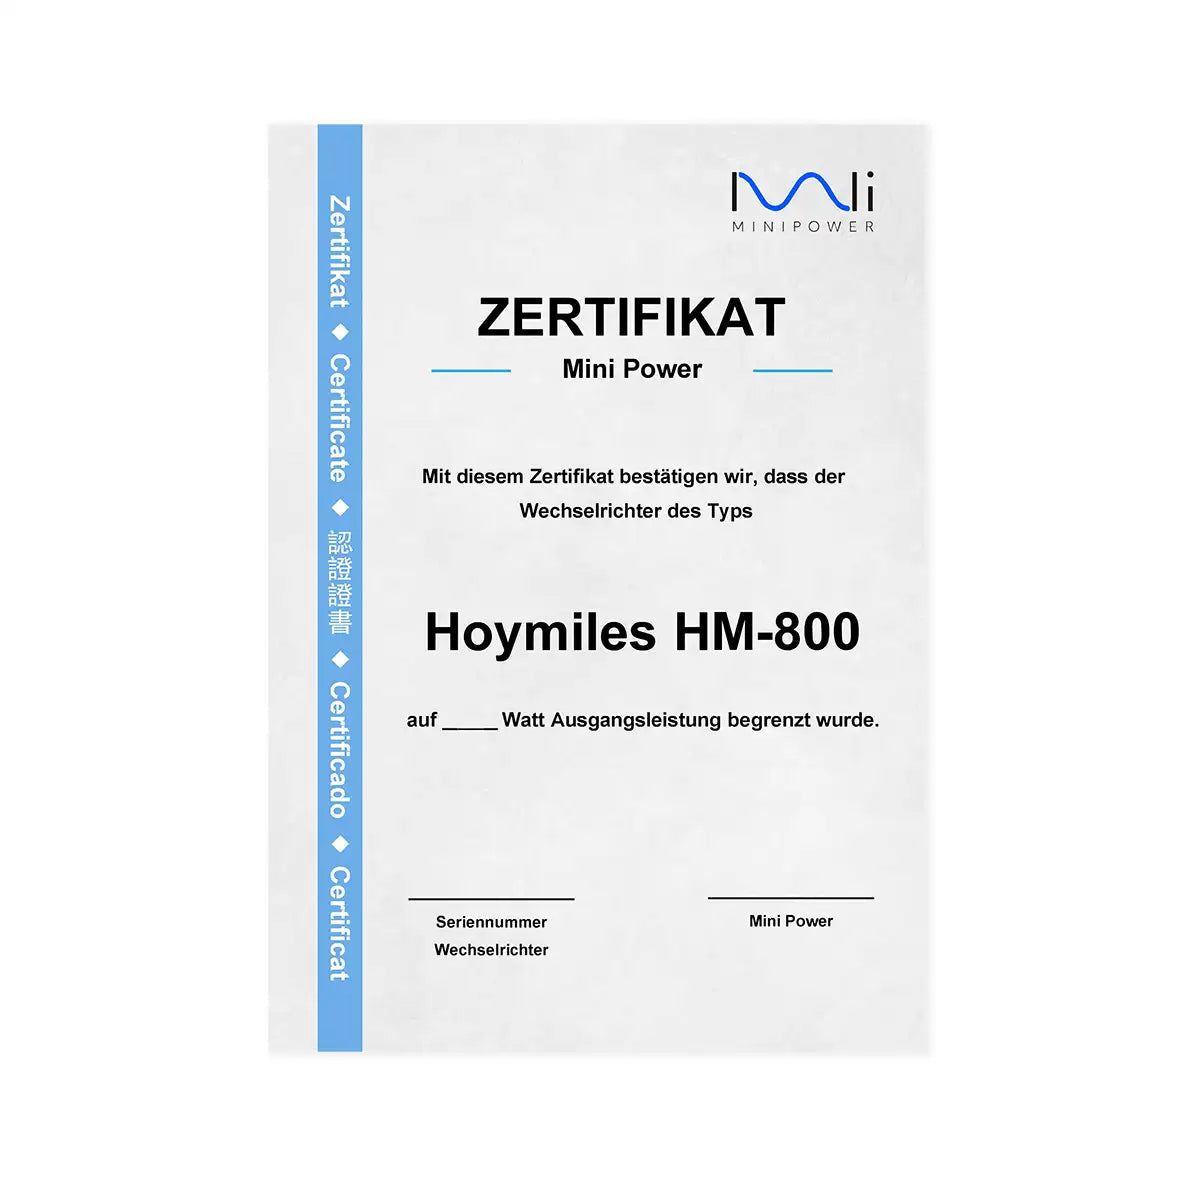 Hoymiles DTU-Wlite con certificado - certificado